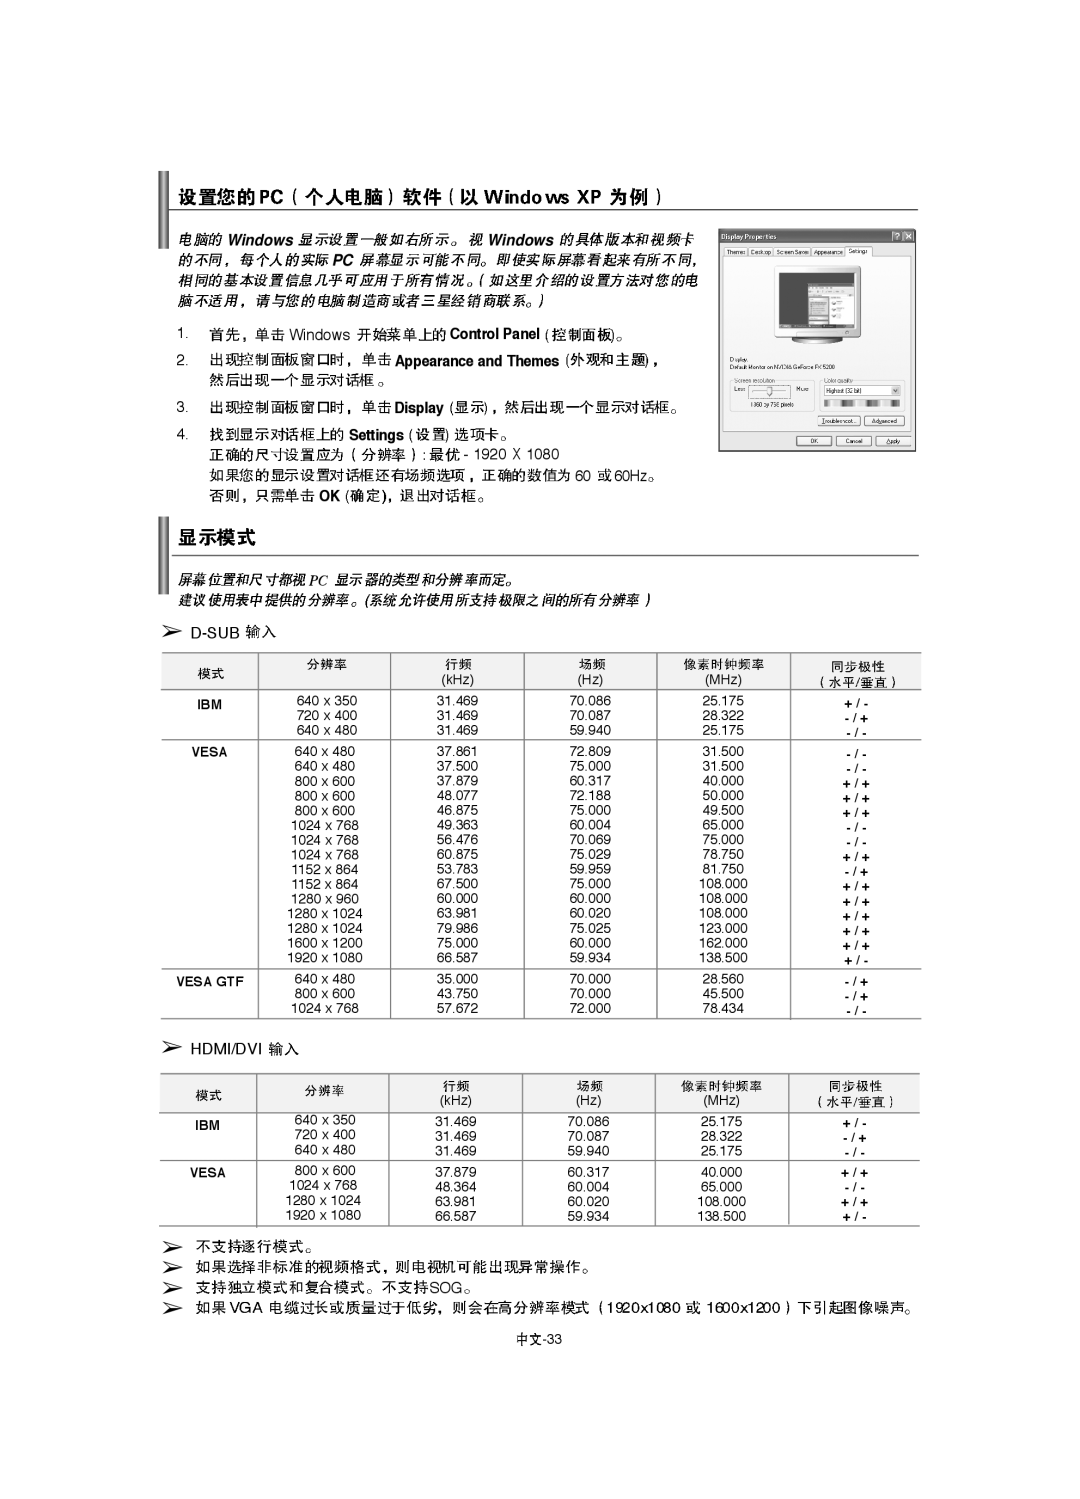 Samsung LA40F8, LA52F8, LA46F8 manual Windows, + / +, Vesa Gtf 